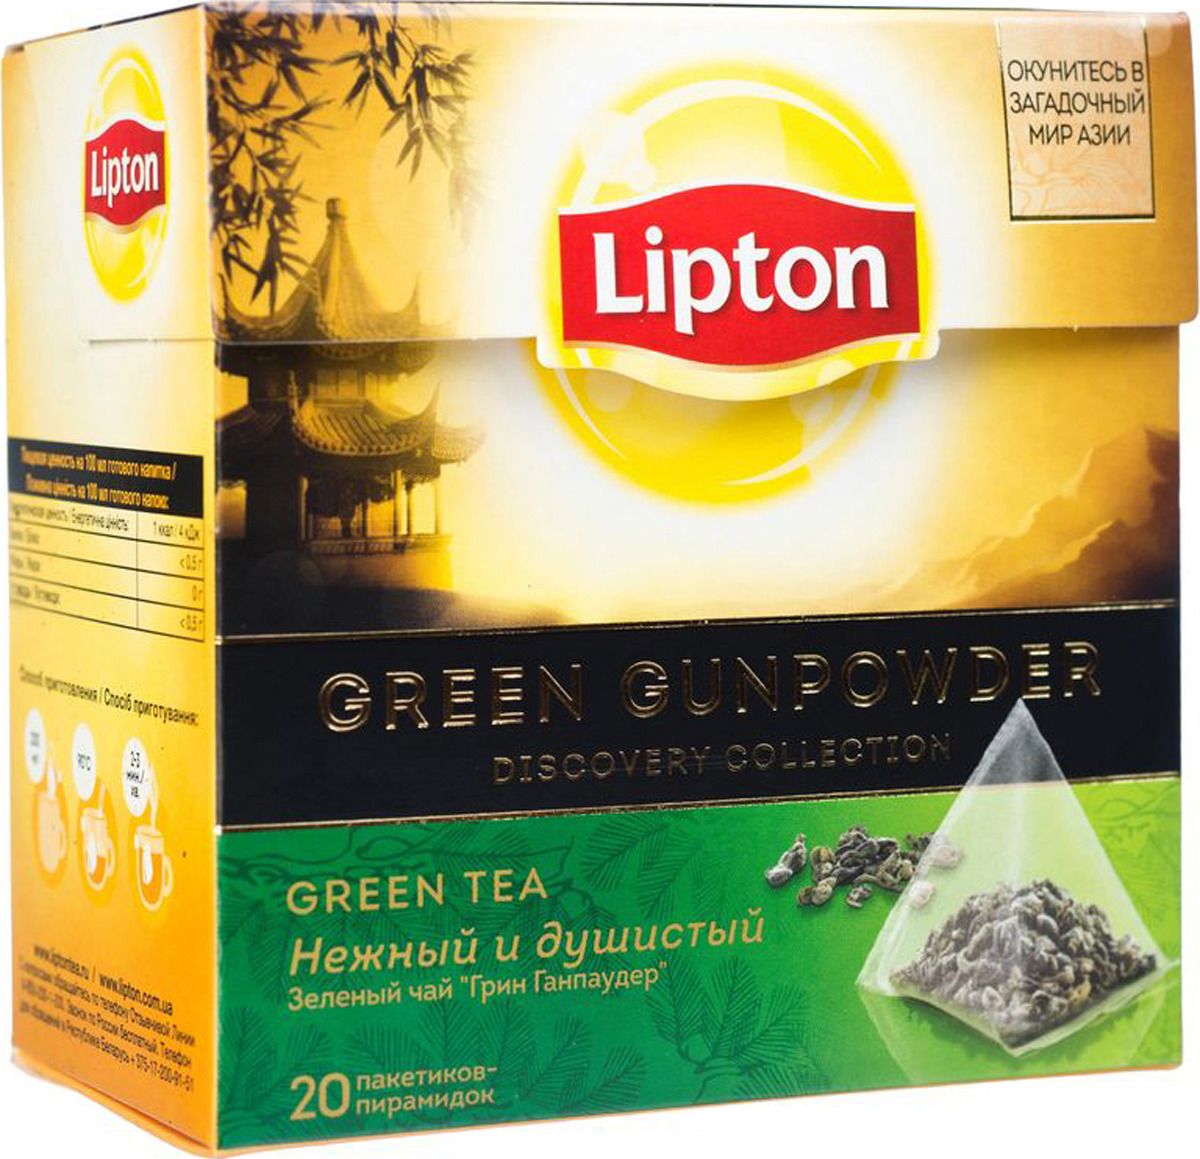 Lipton   Green gunpowder 20 